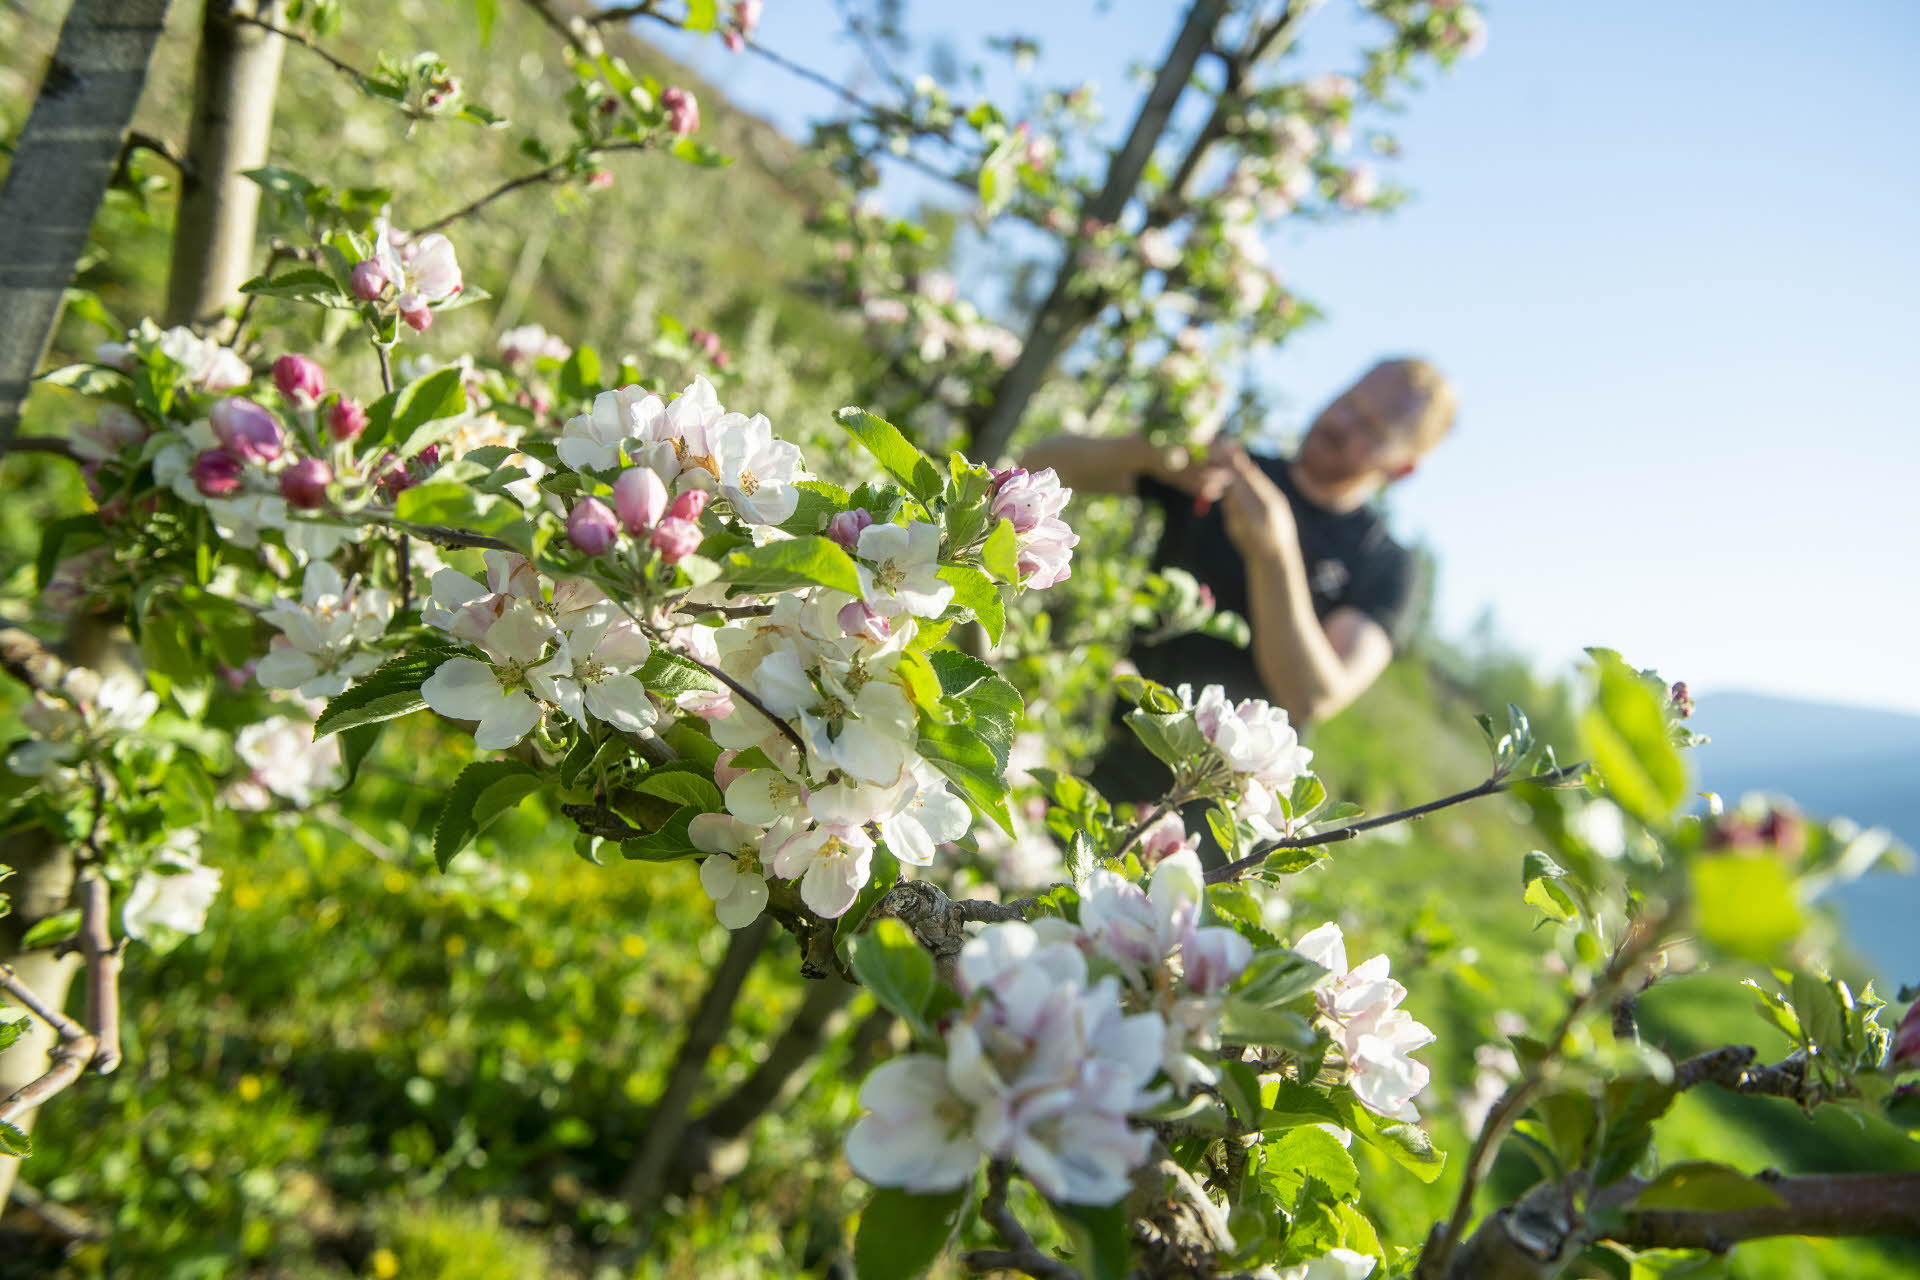 Eple gårdbruker i Hardanger beskjærer epletrær i blomstringen